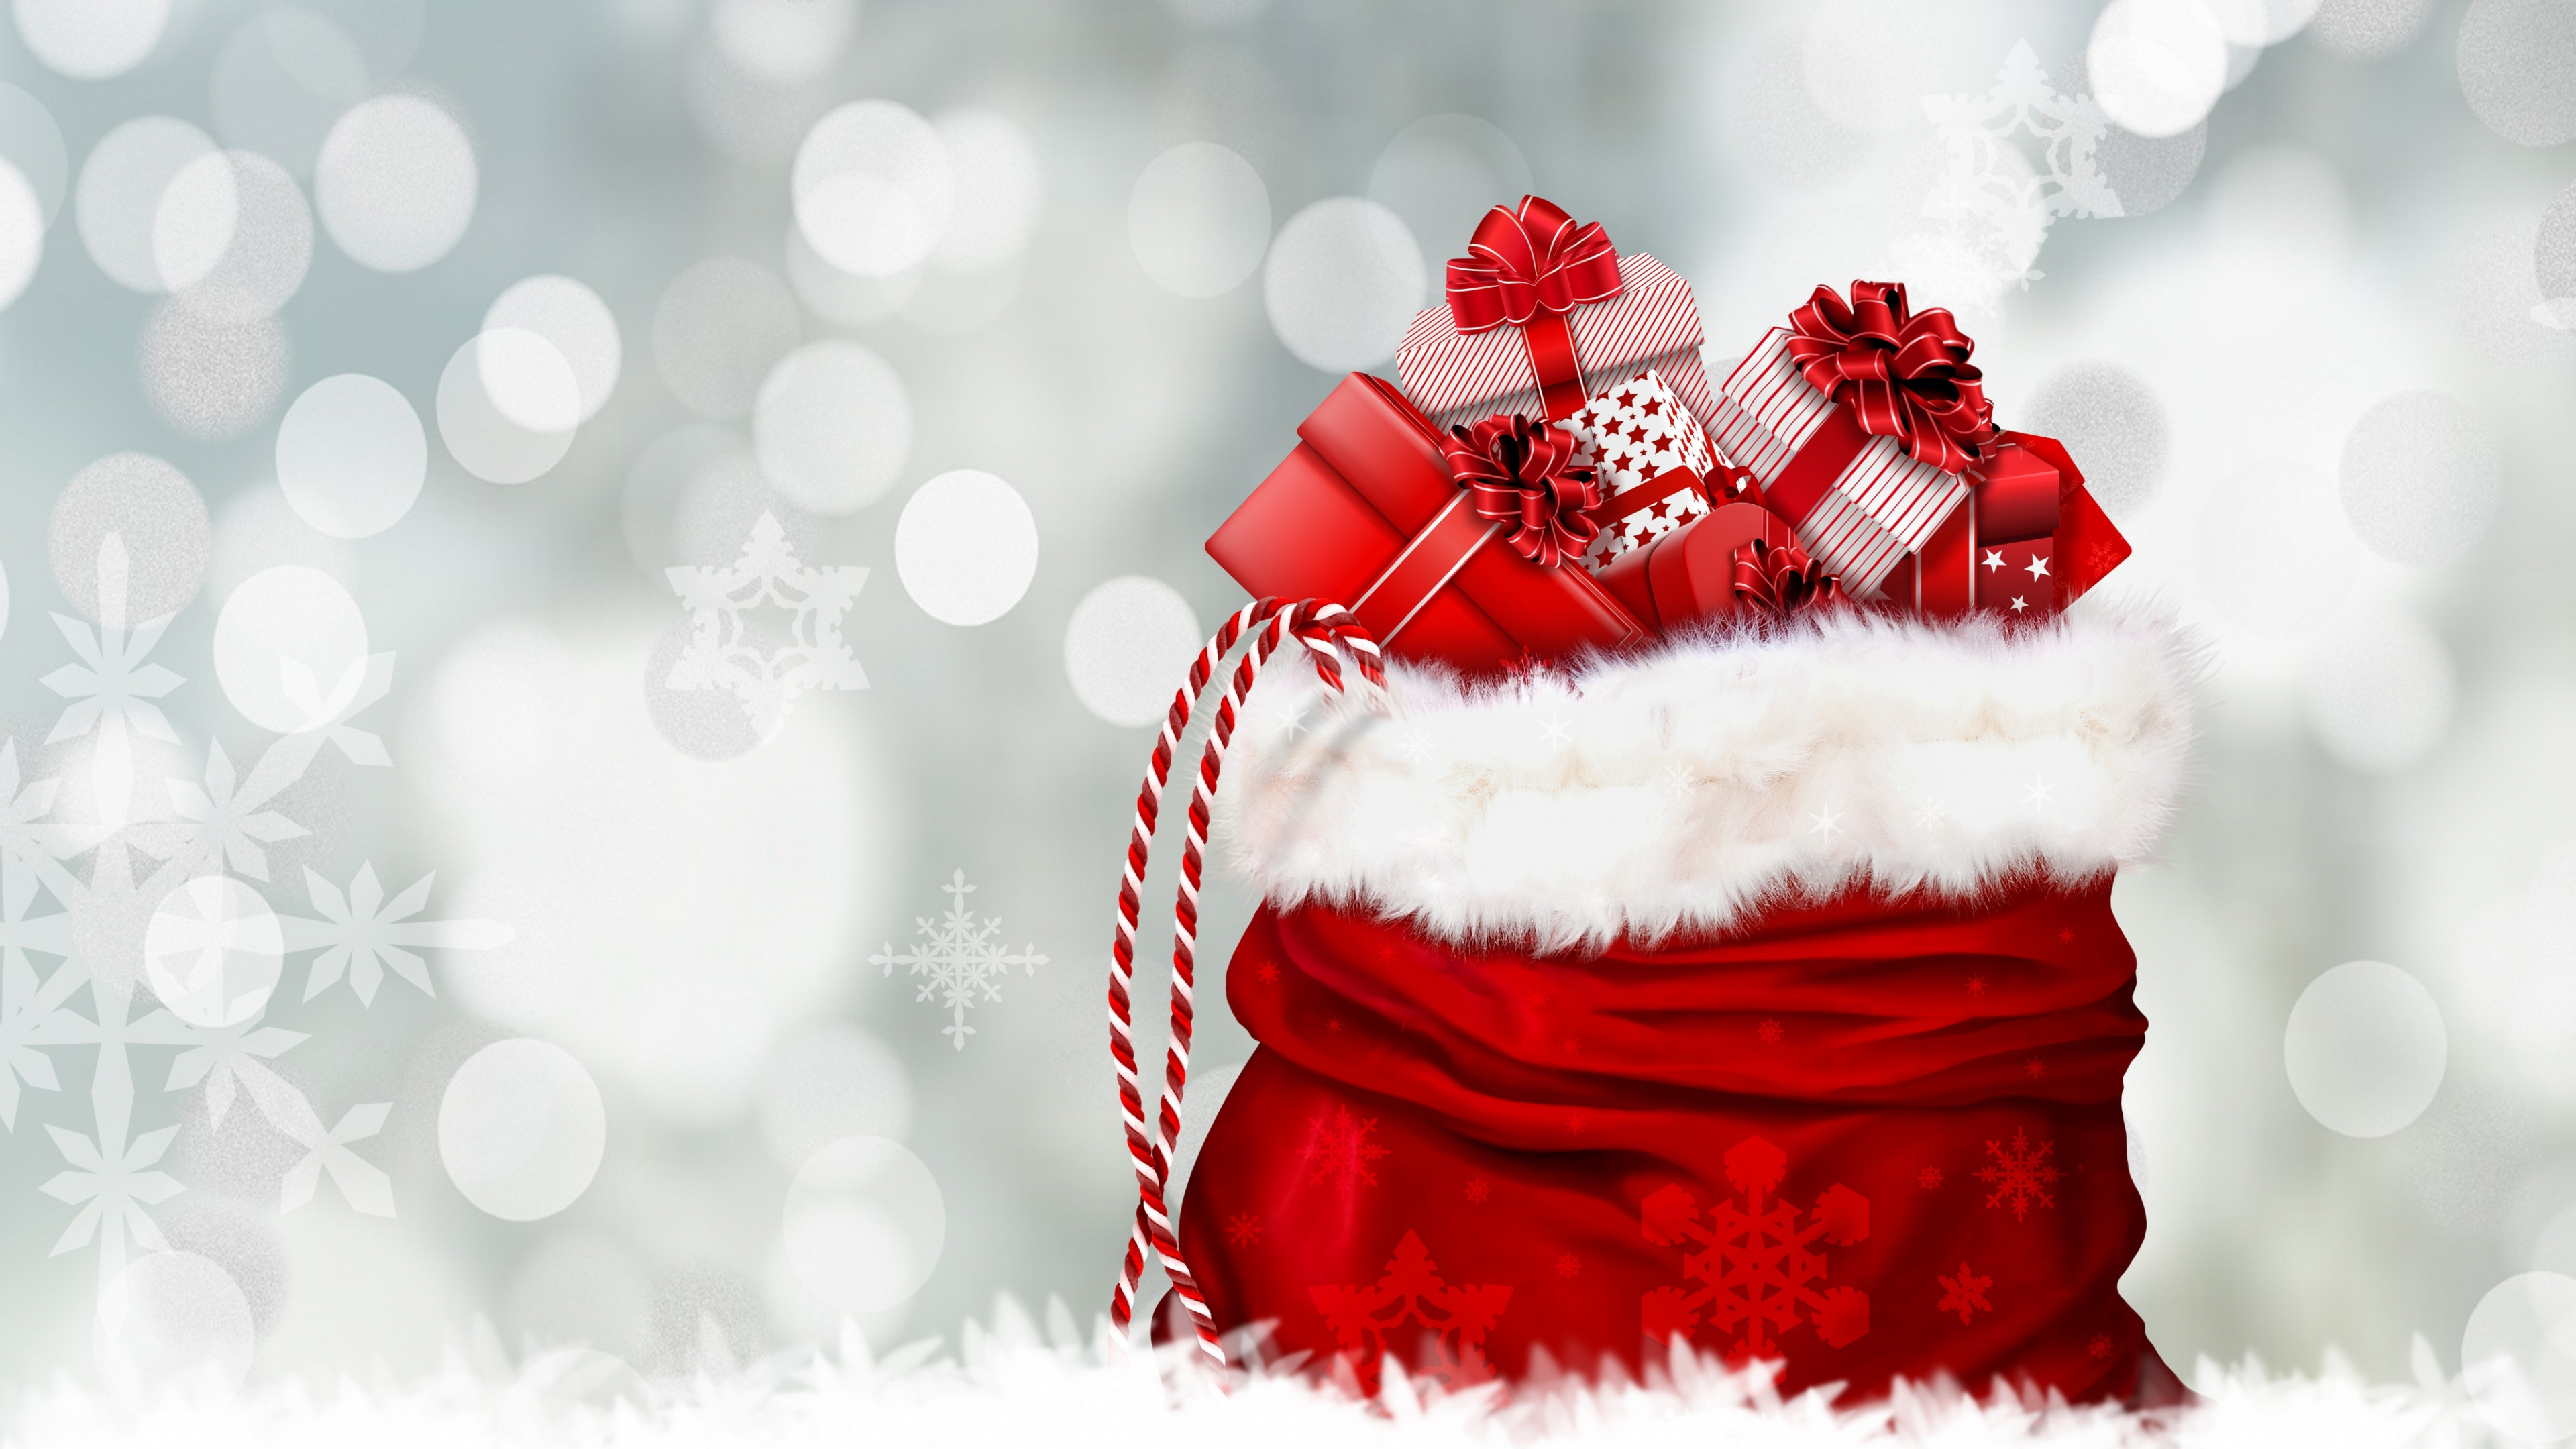 Le Jour De Noël, Santa Claus, Cadeau de Noël, Red, Hiver. Wallpaper in 3840x2160 Resolution